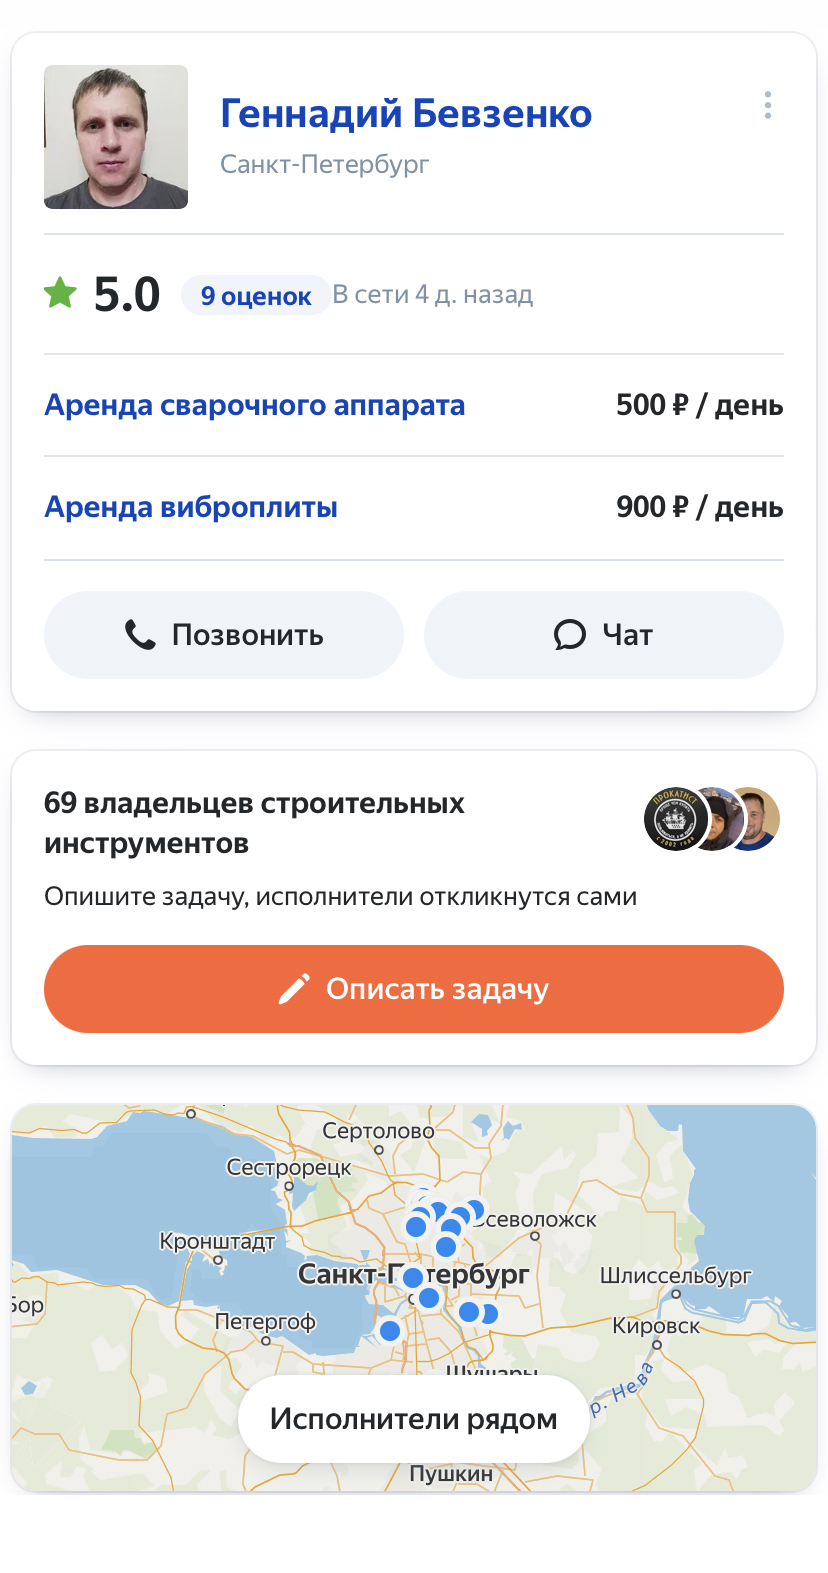 Арендовать сварочный аппарат можно через сайты услуг. Источник: yandex.ru